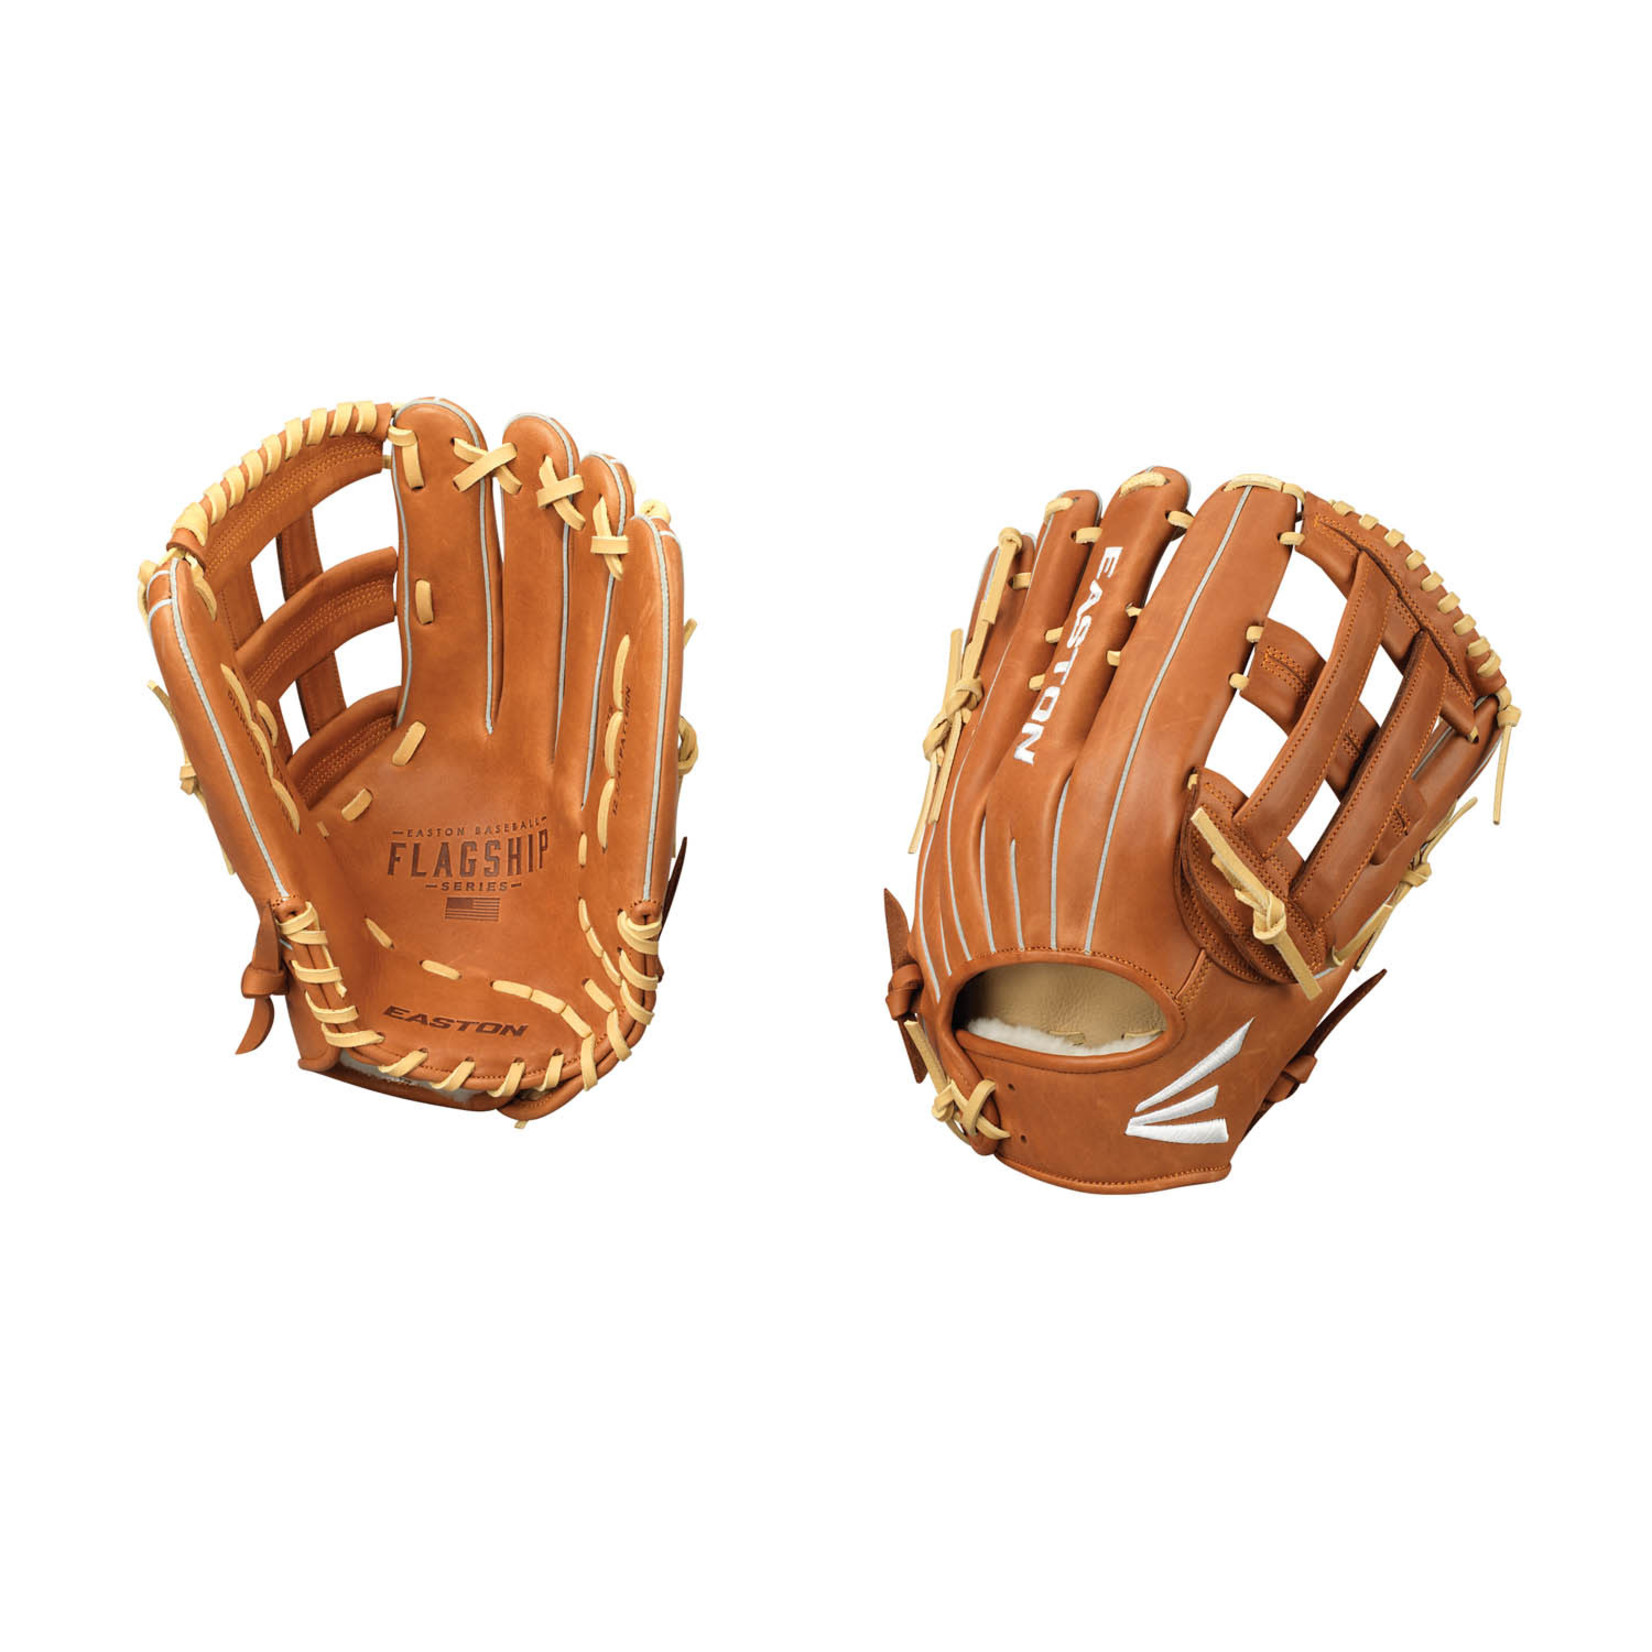 Easton Easton Flagship Baseball Glove